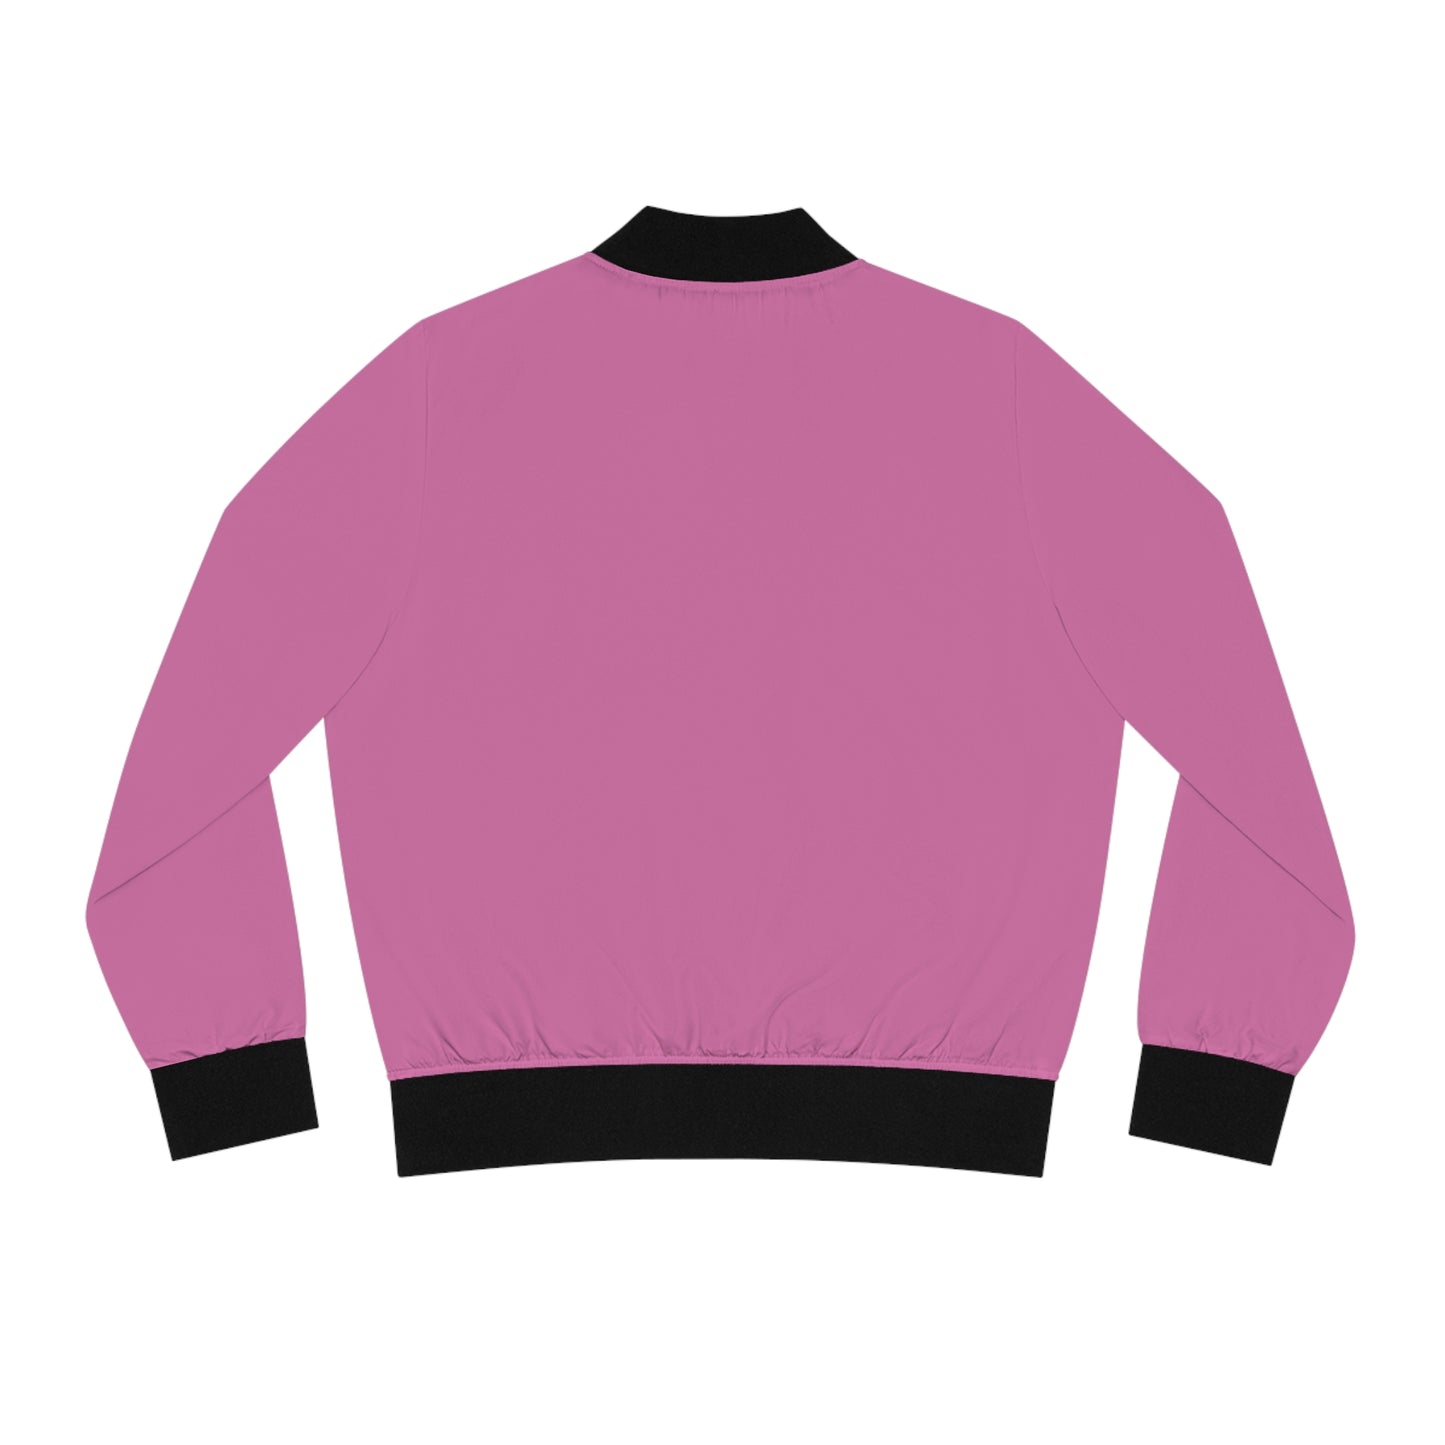 GRUMONH - Women's Bomber Jacket Pink